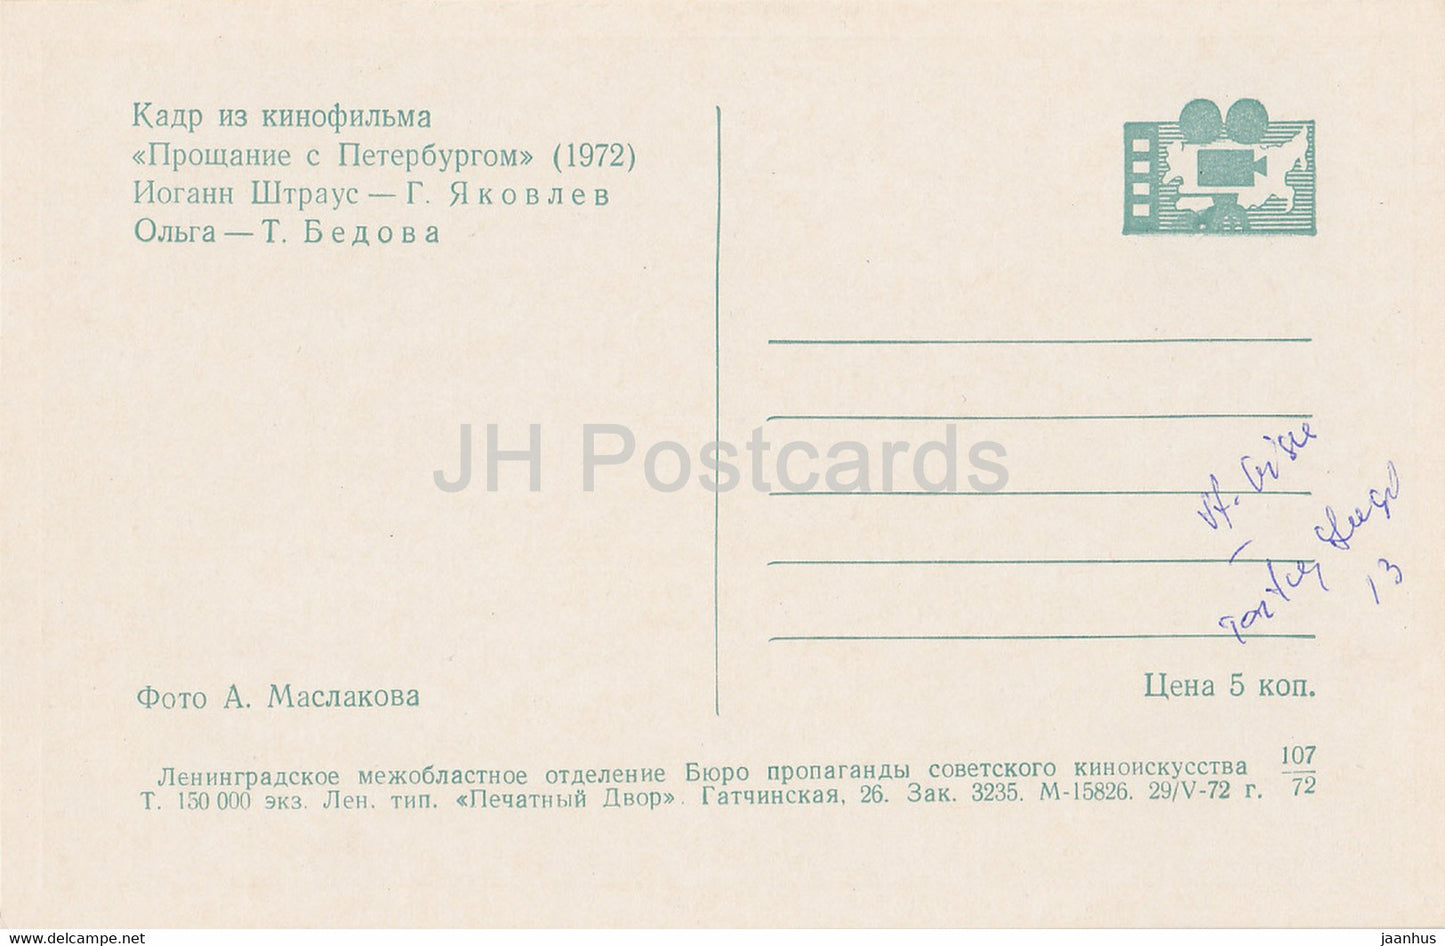 Adieu à Saint-Pétersbourg - actrice T. Bedova acteur G. Yakovlev - Film - Film - soviétique - 1972 - Russie URSS - inutilisé